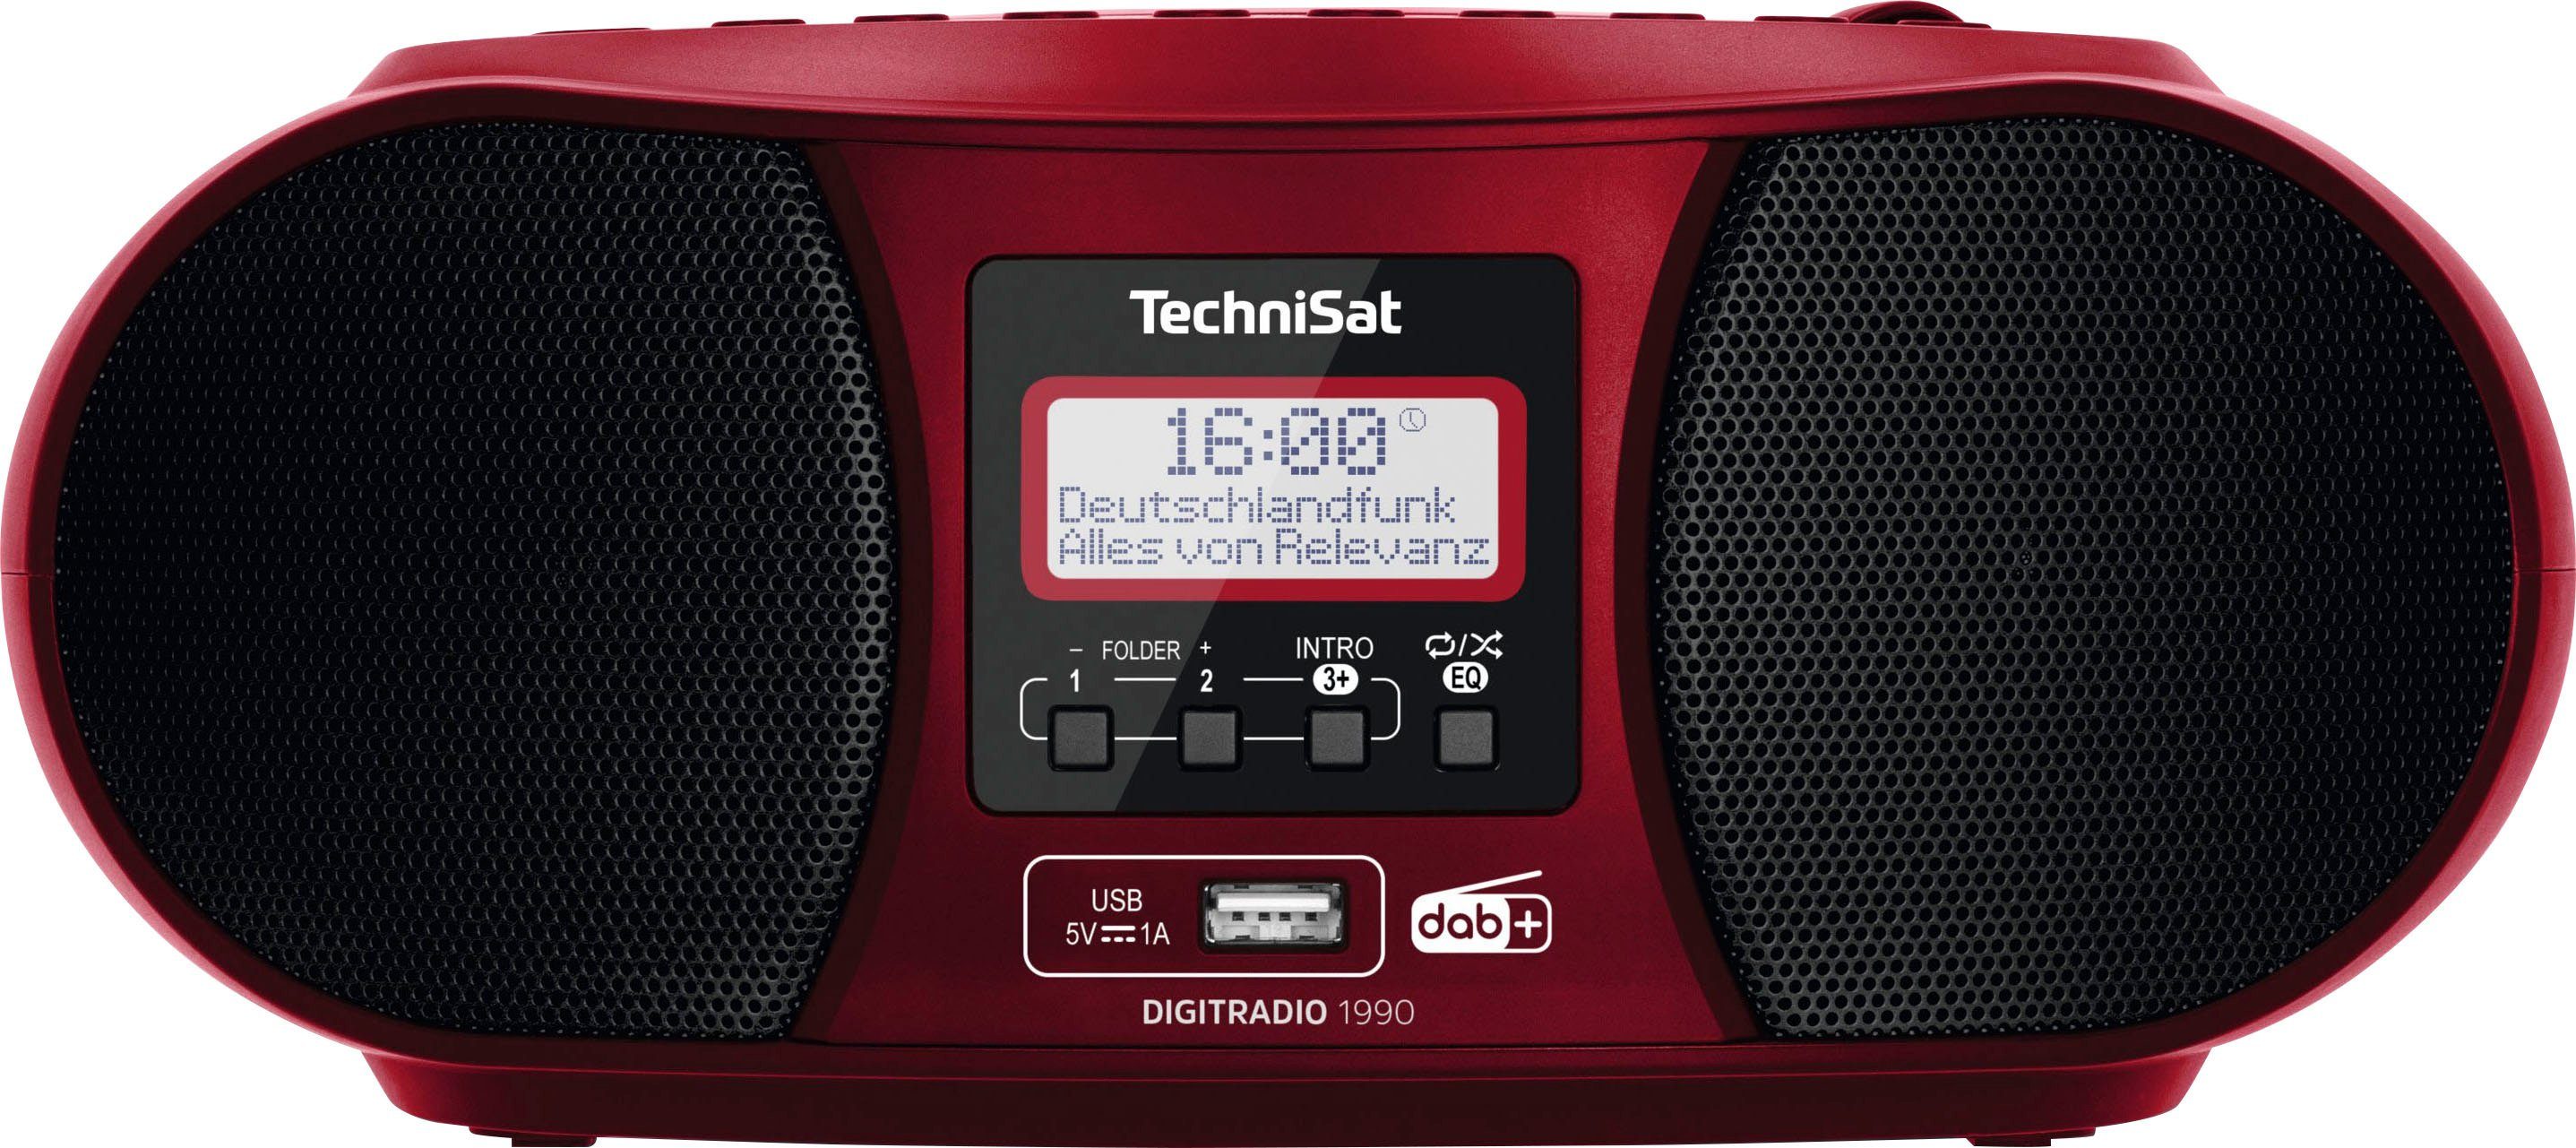 TechniSat DIGITRADIO 1990 Digitalradio (DAB) (Digitalradio (DAB), UKW mit RDS, 3 W, CD-Player) rot